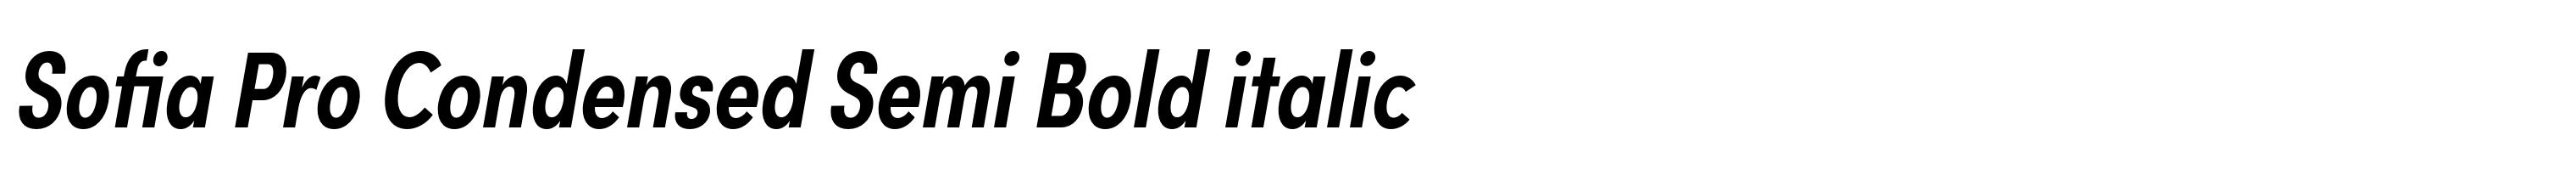 Sofia Pro Condensed Semi Bold italic